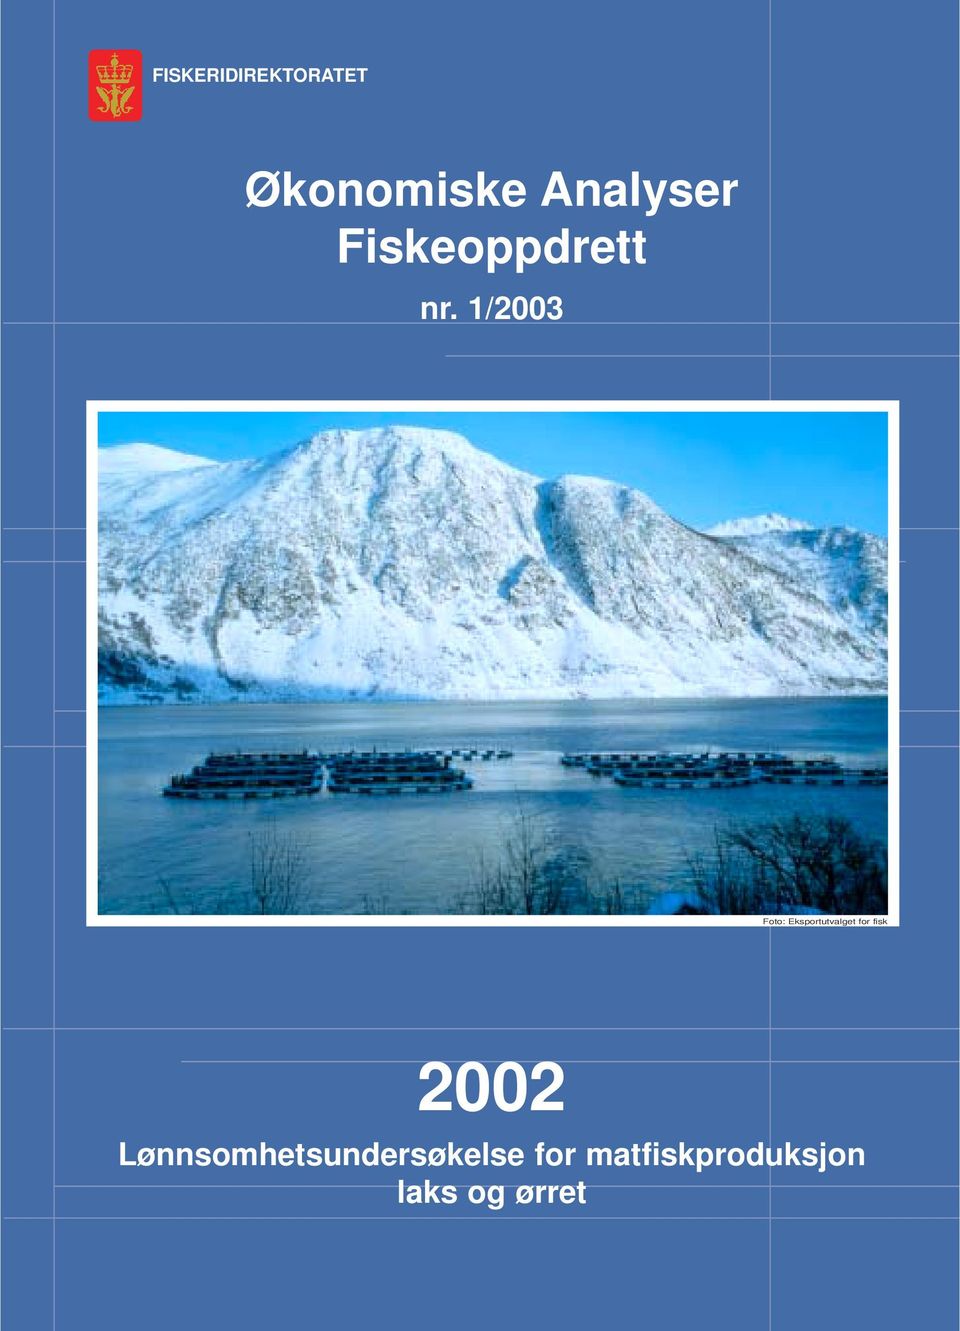 1/2003 Foto: Eksportutvalget for fisk